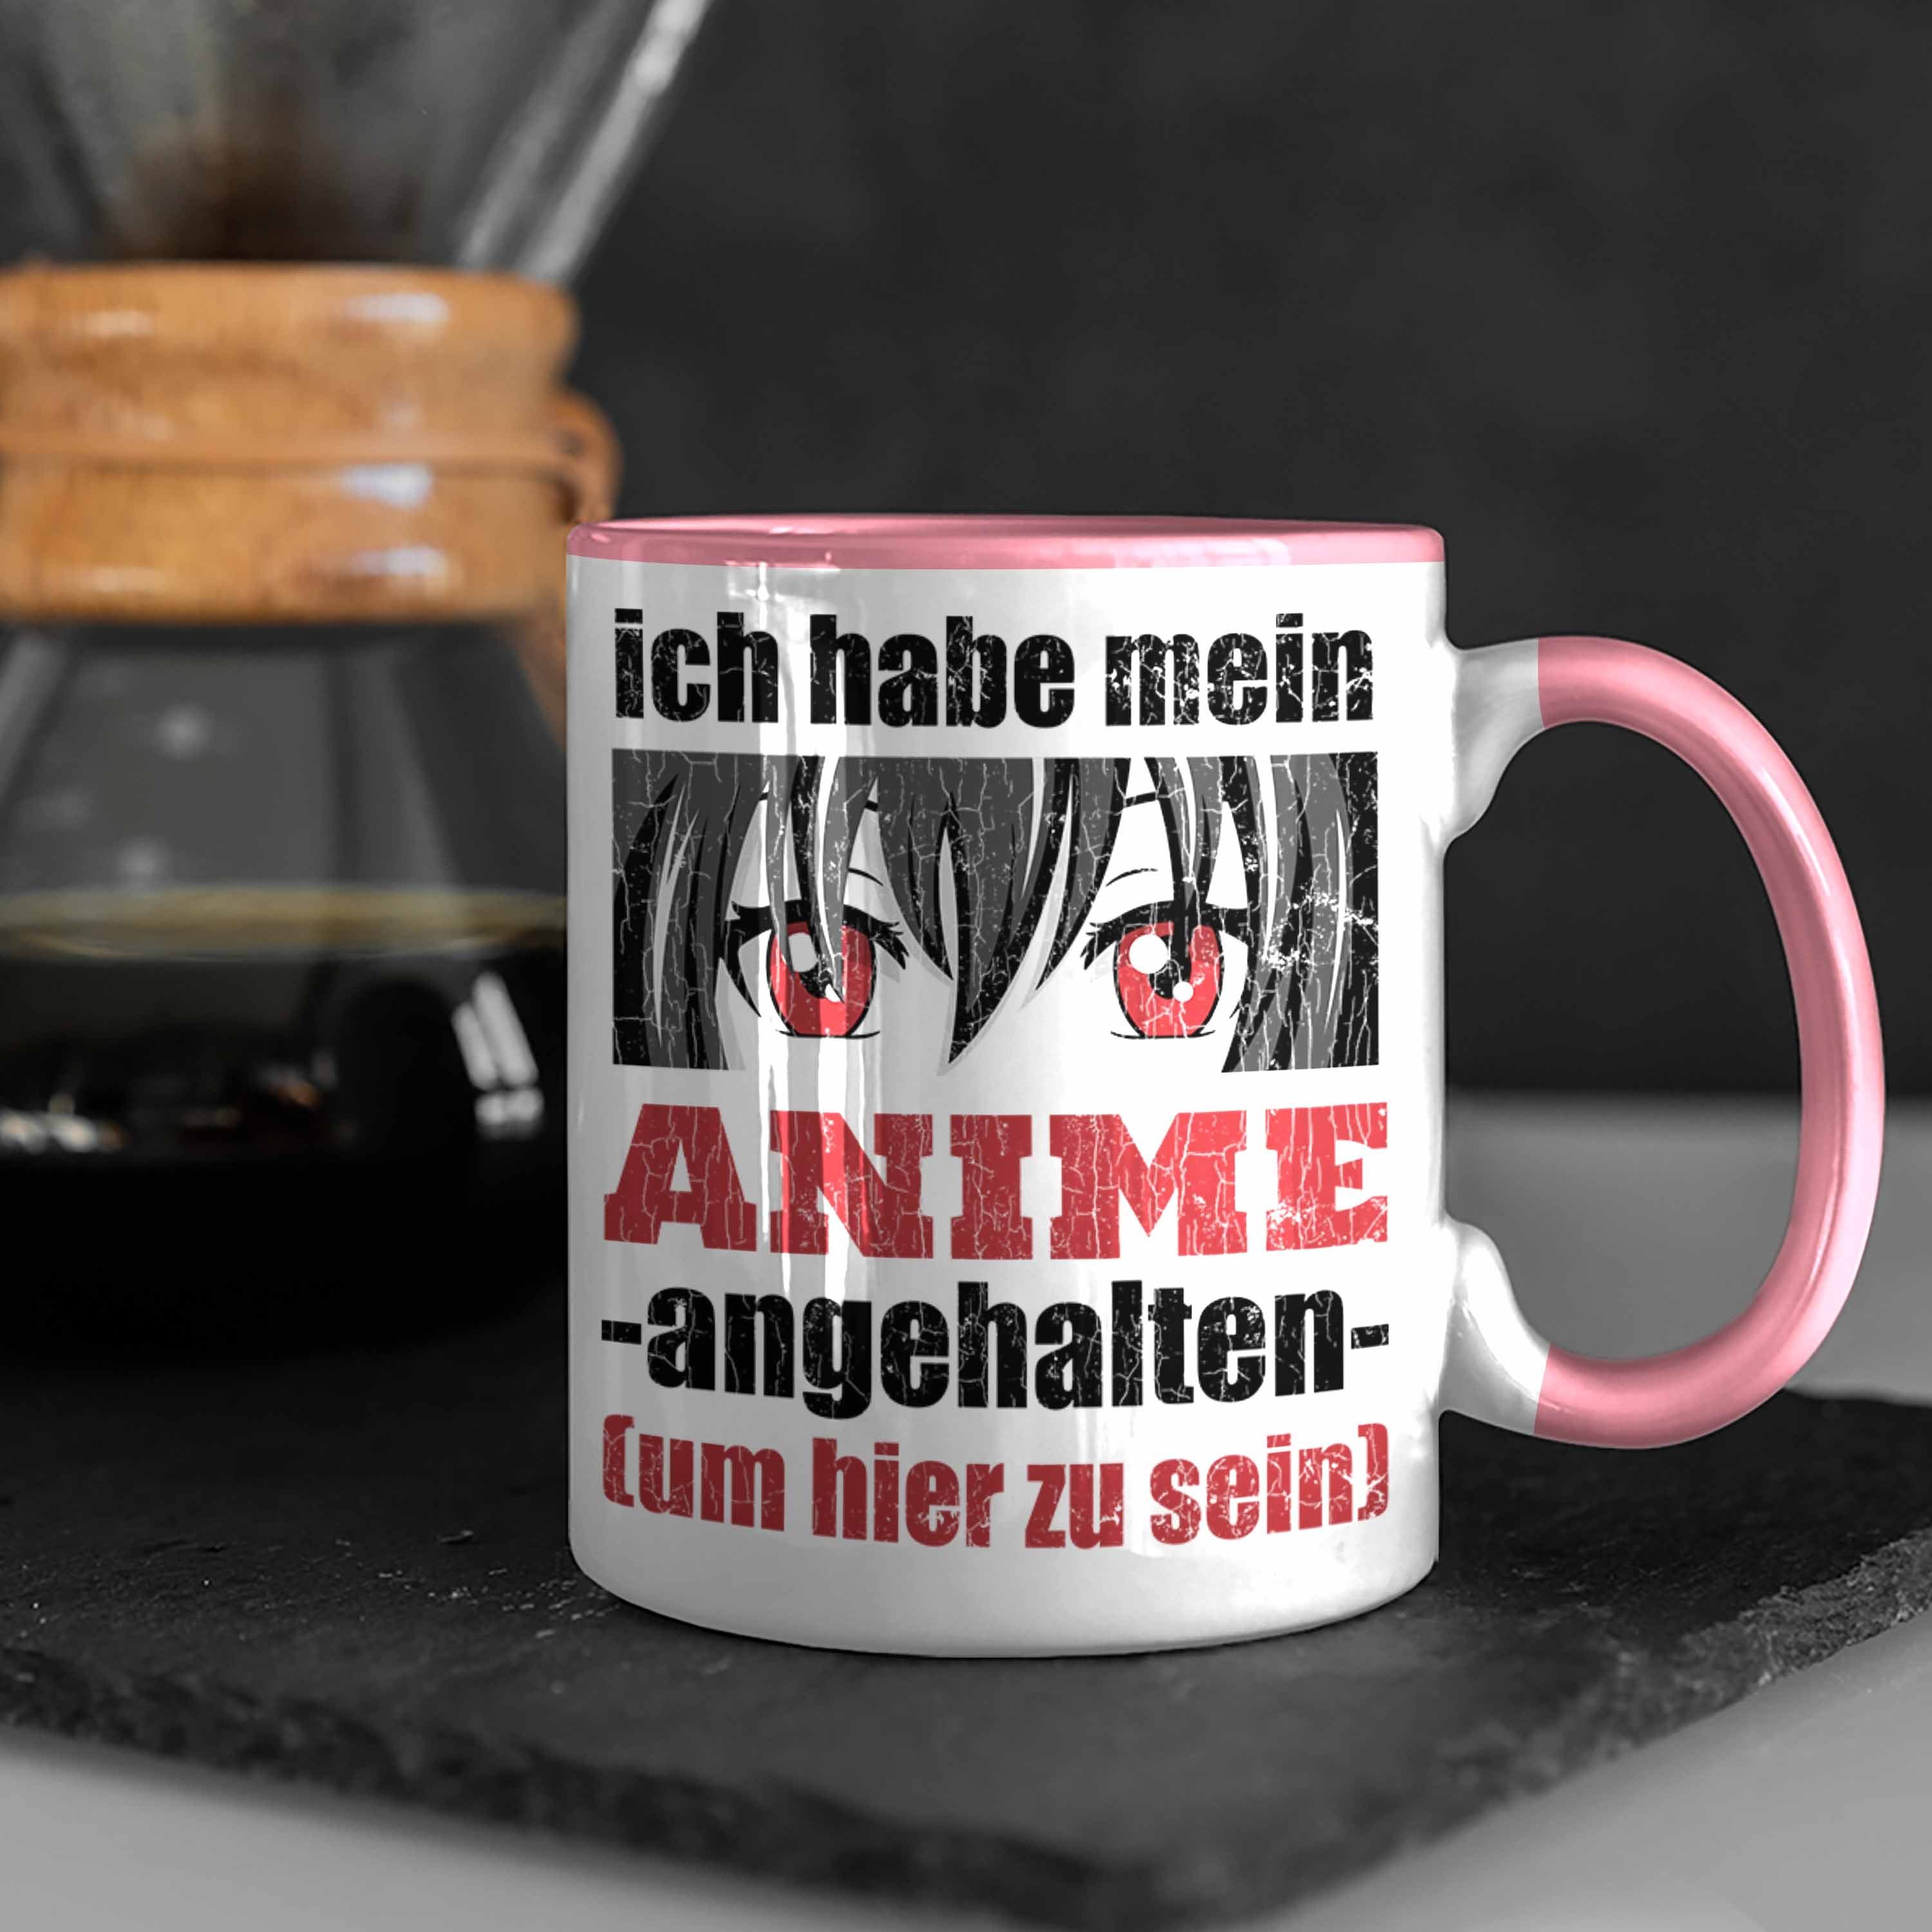 Trendation Fan Kaffeetasse Tasse Sprüche Anme Anime Geschenke - Tasse Spruch Trendation Rosa Deko Spruch Geschenk